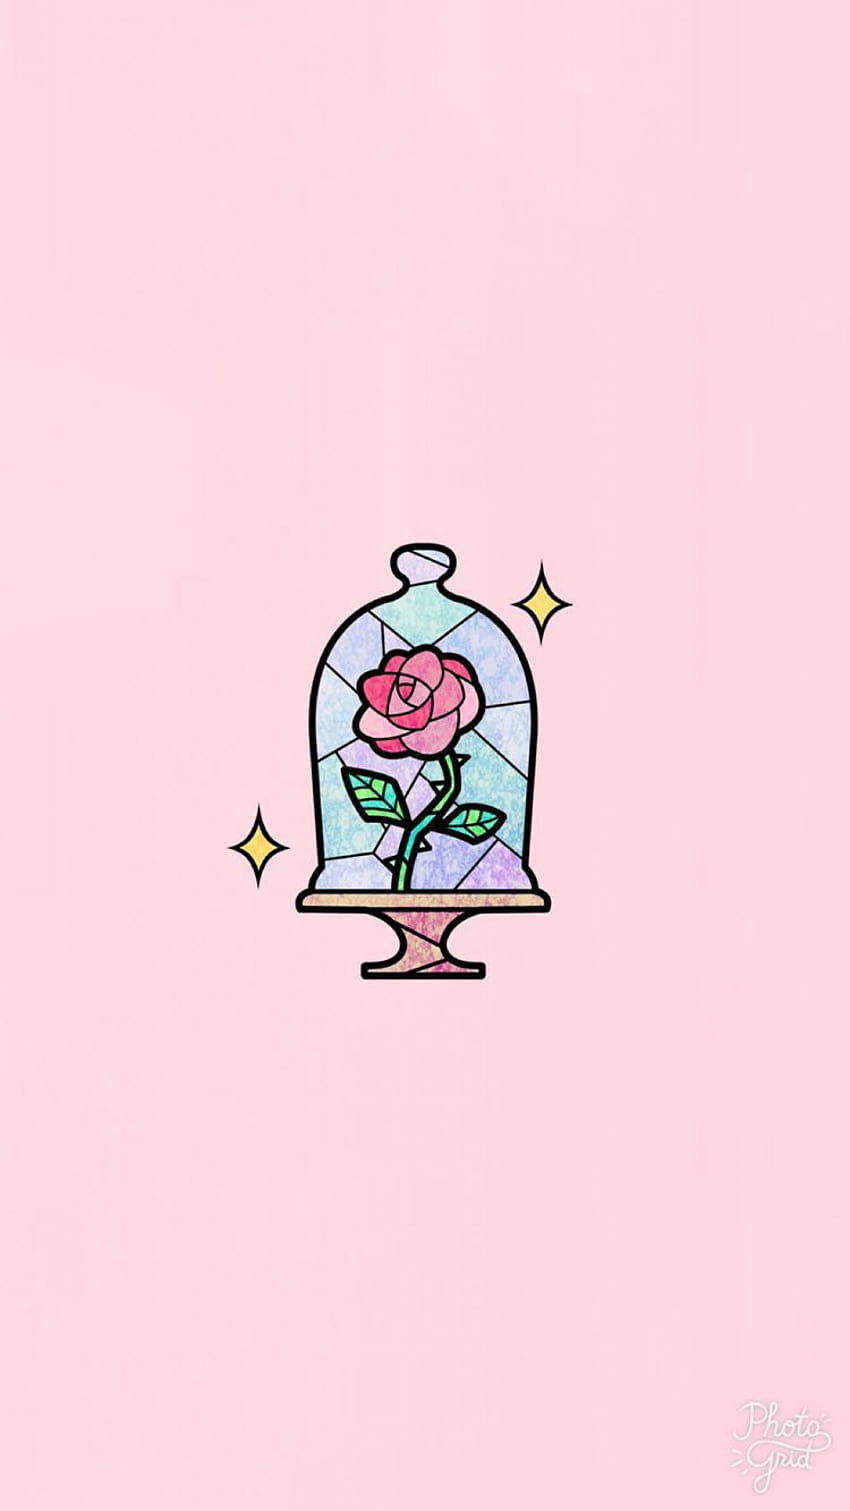 Enchanted rose Disney beauty and the beast, cute disney aesthetic HD phone wallpaper